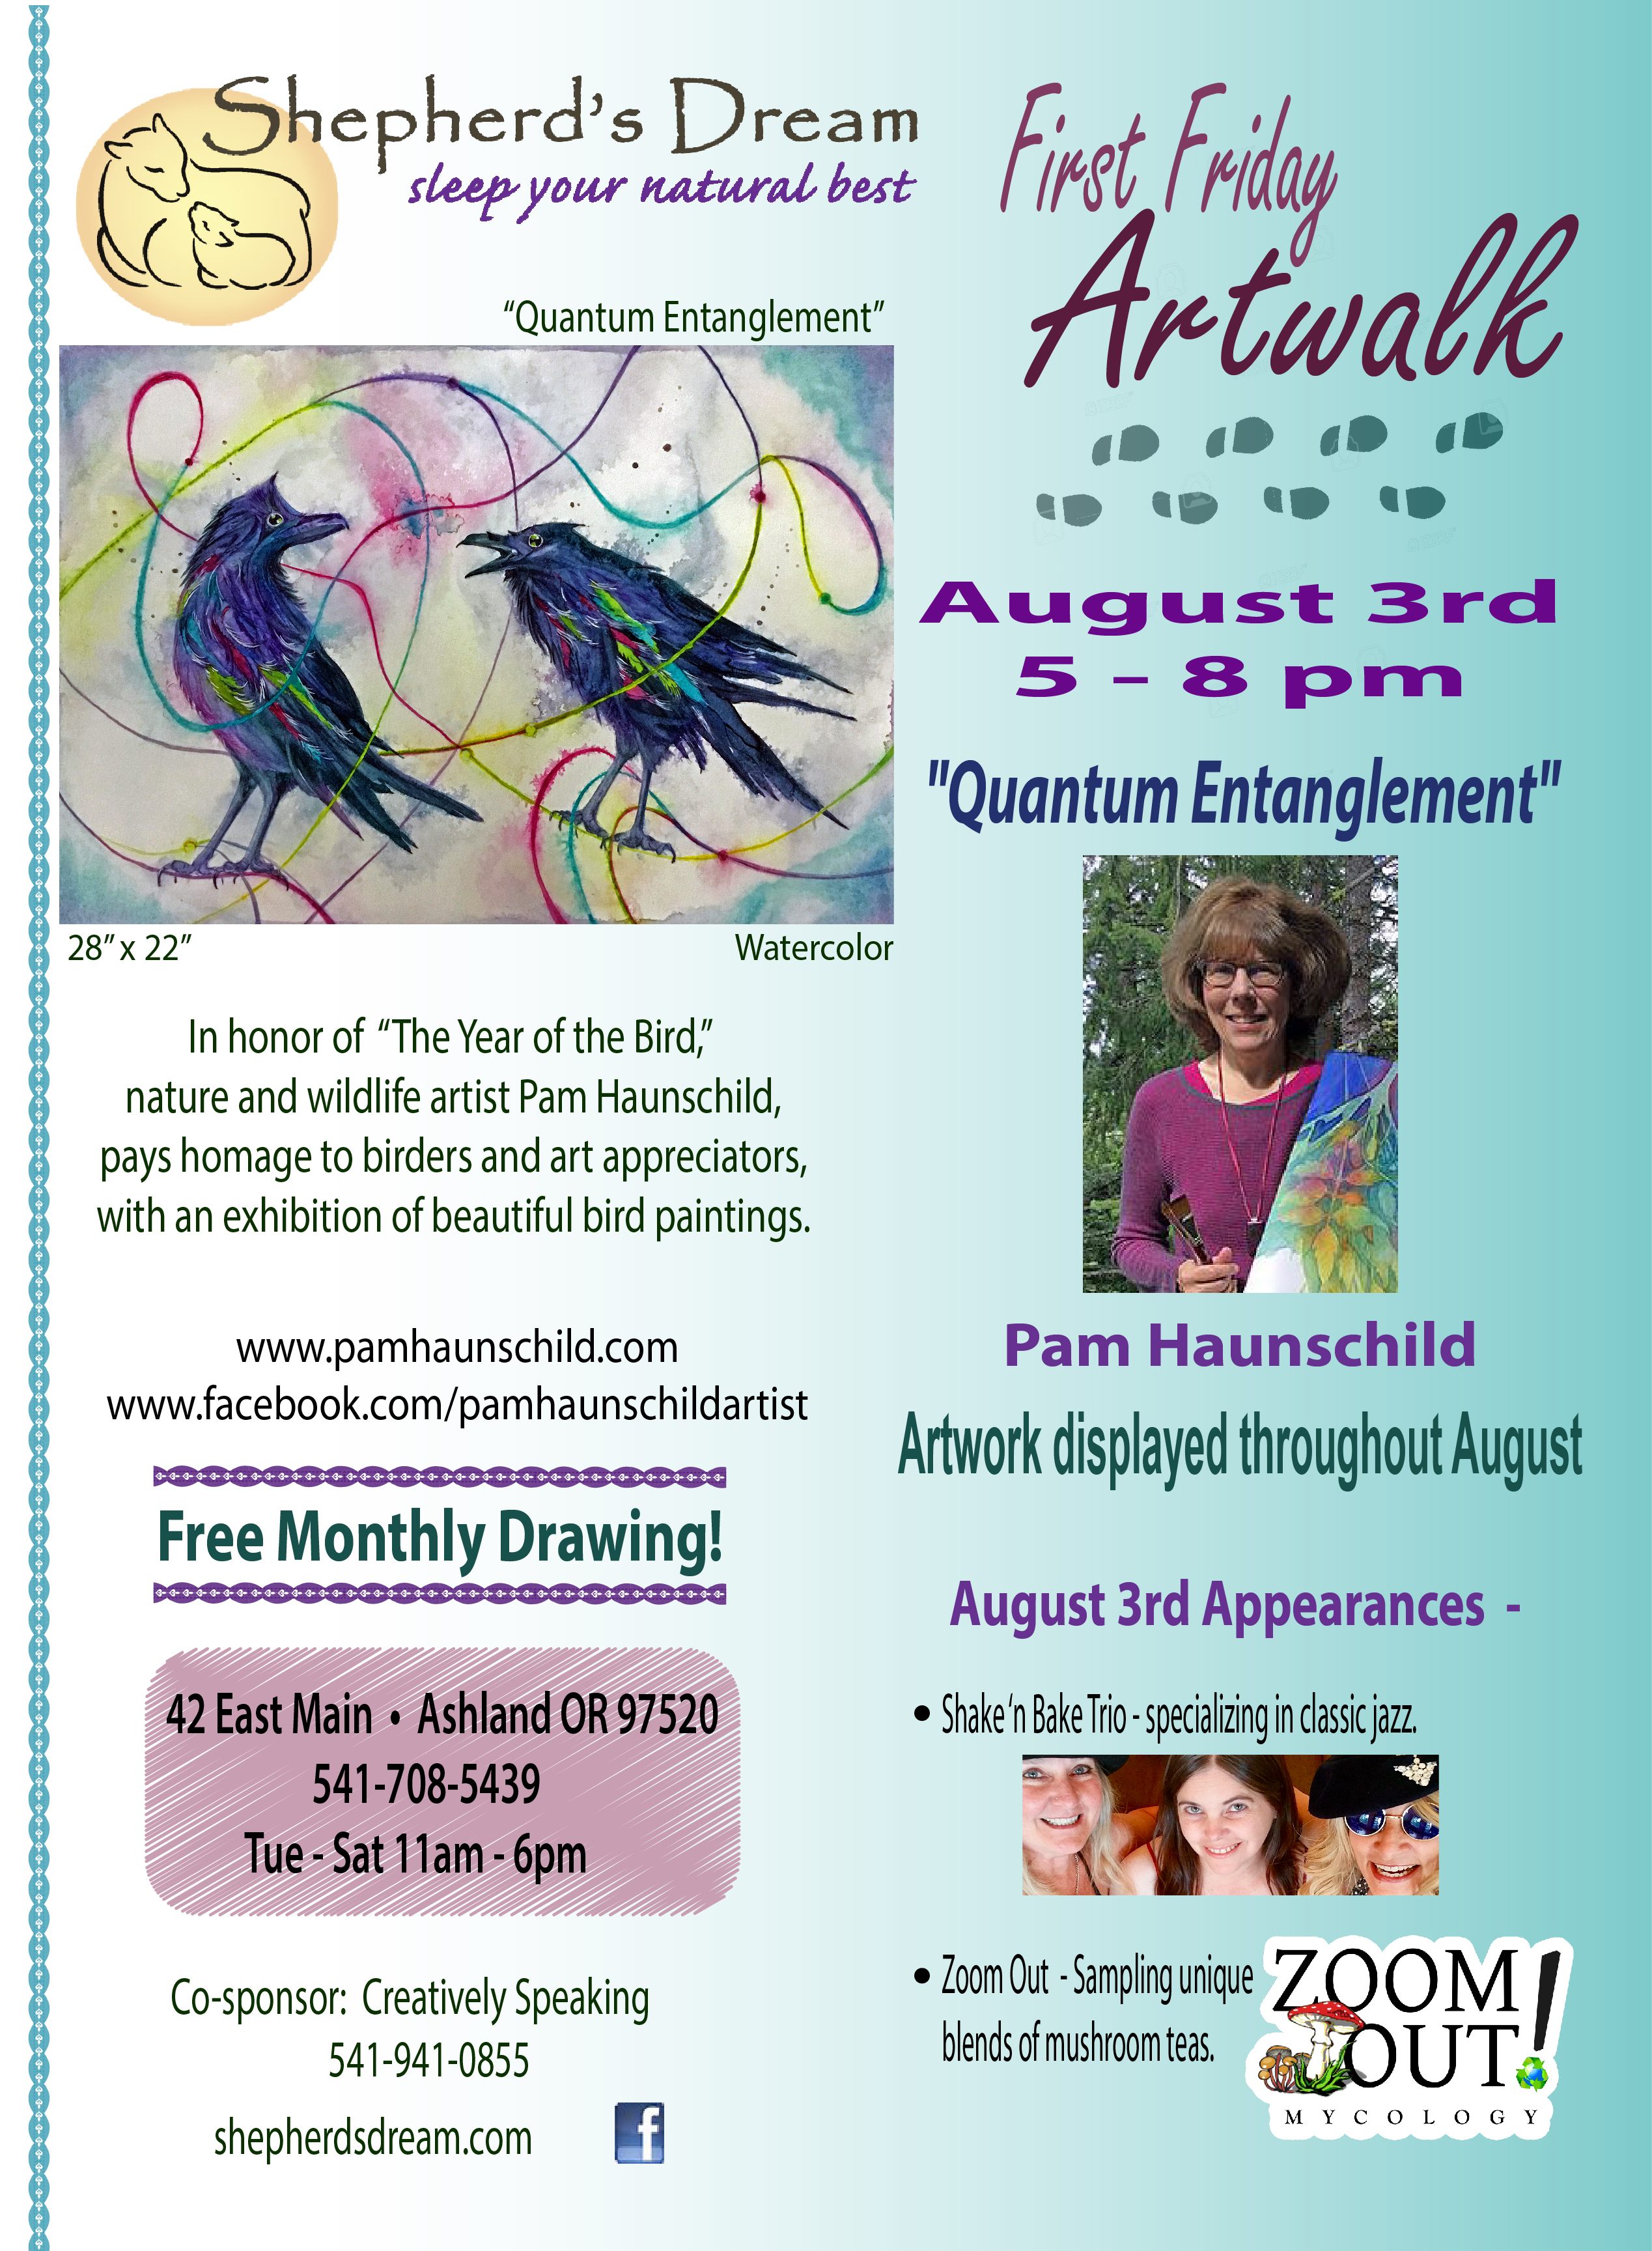 August First Friday Artwalk: "Quantum Entanglement" 1